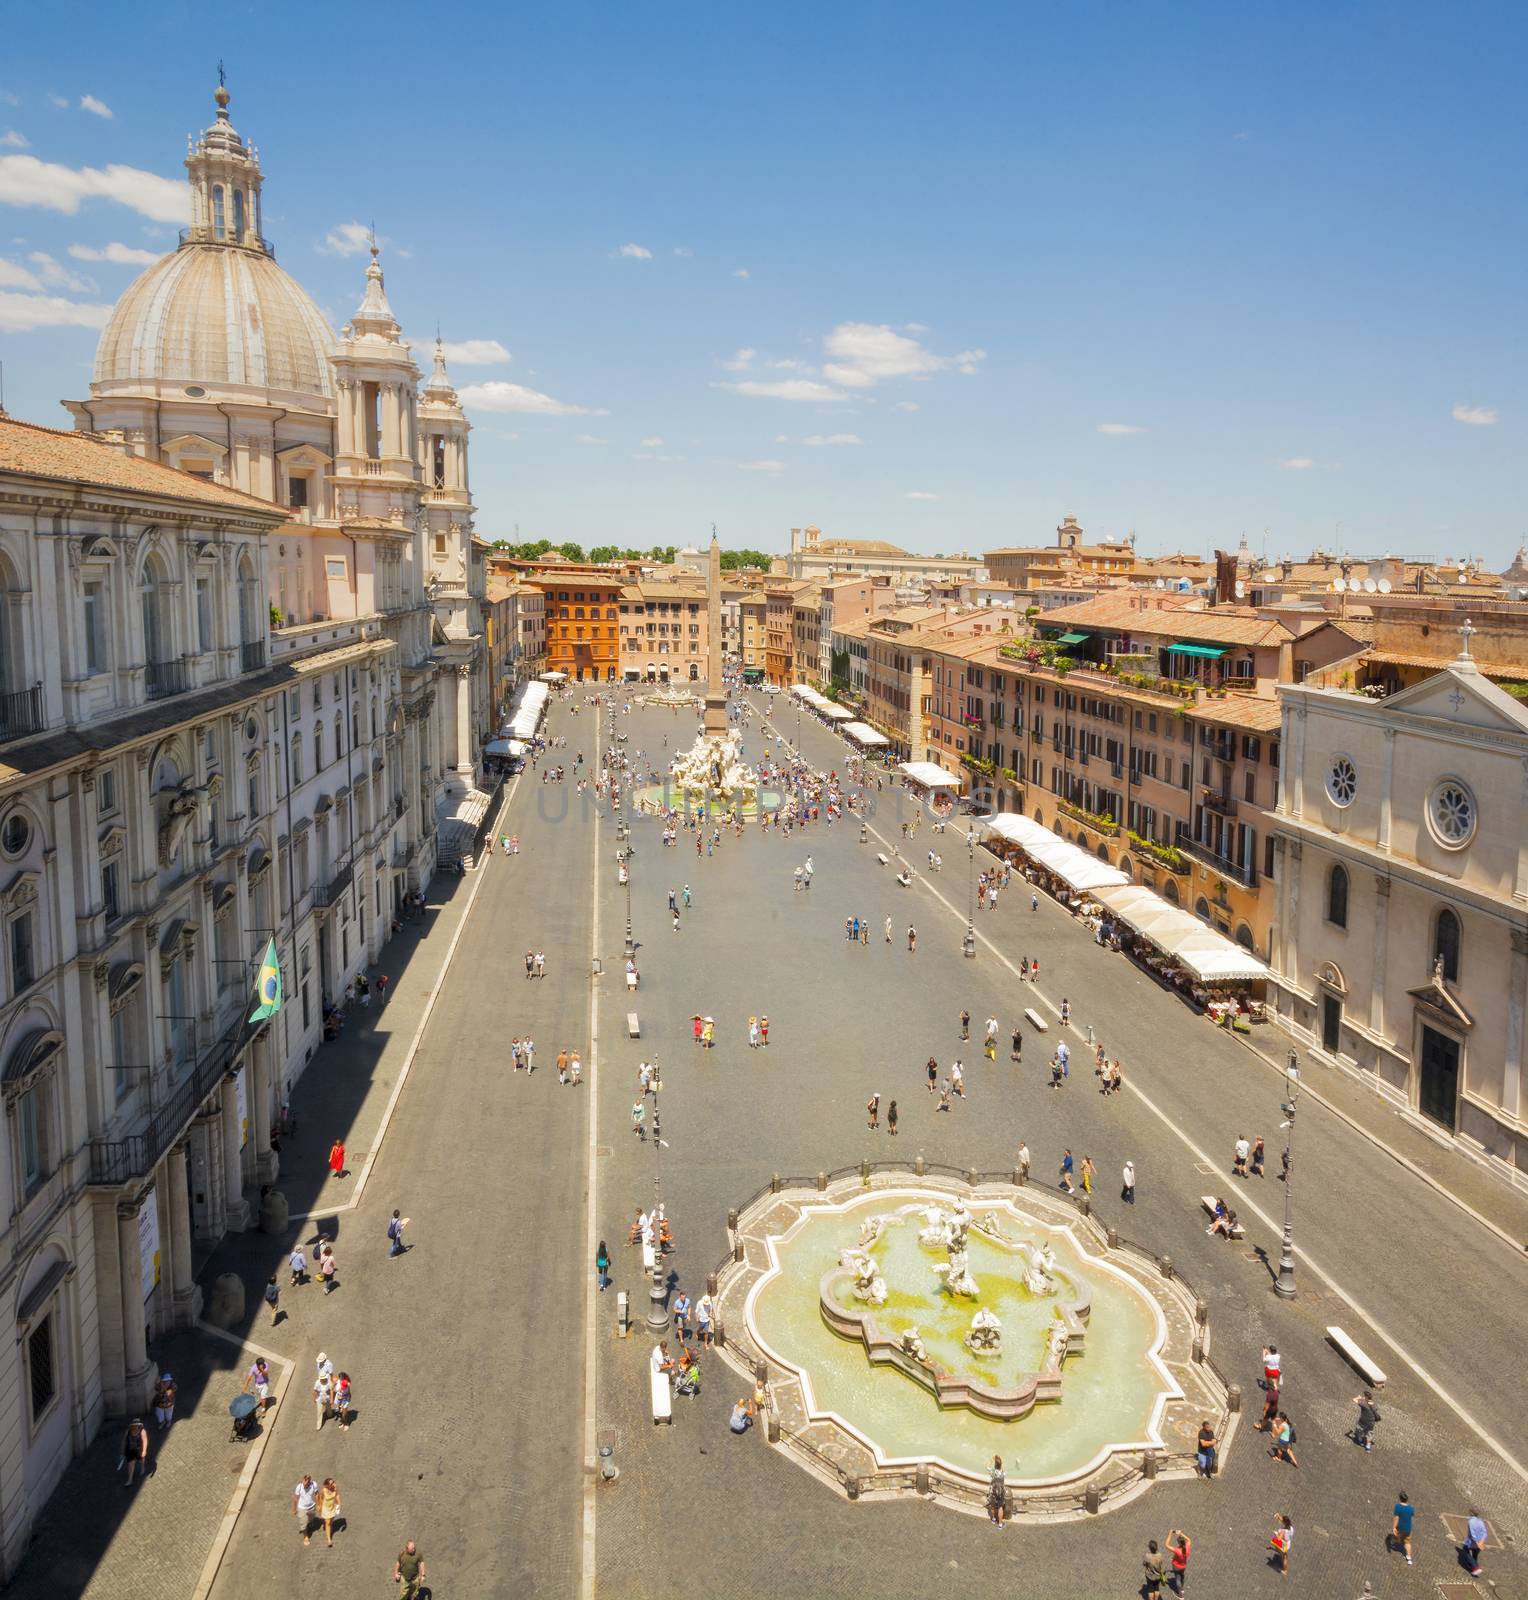 Piazza Navona in Rome by rarrarorro